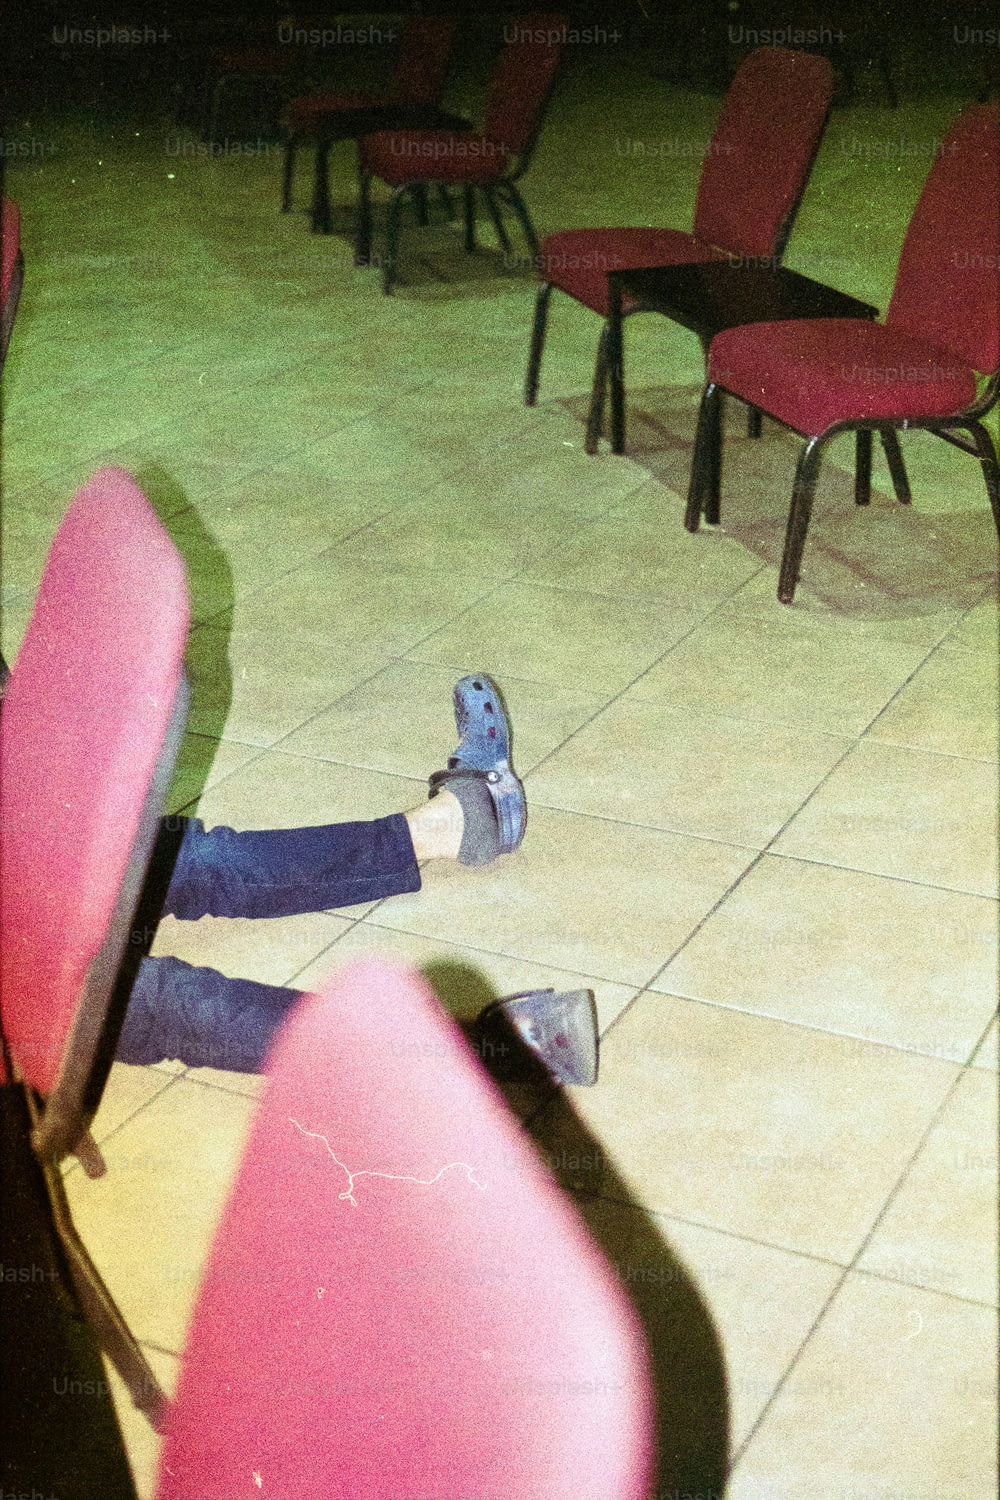 椅子に足を乗せて地面に横たわっている人